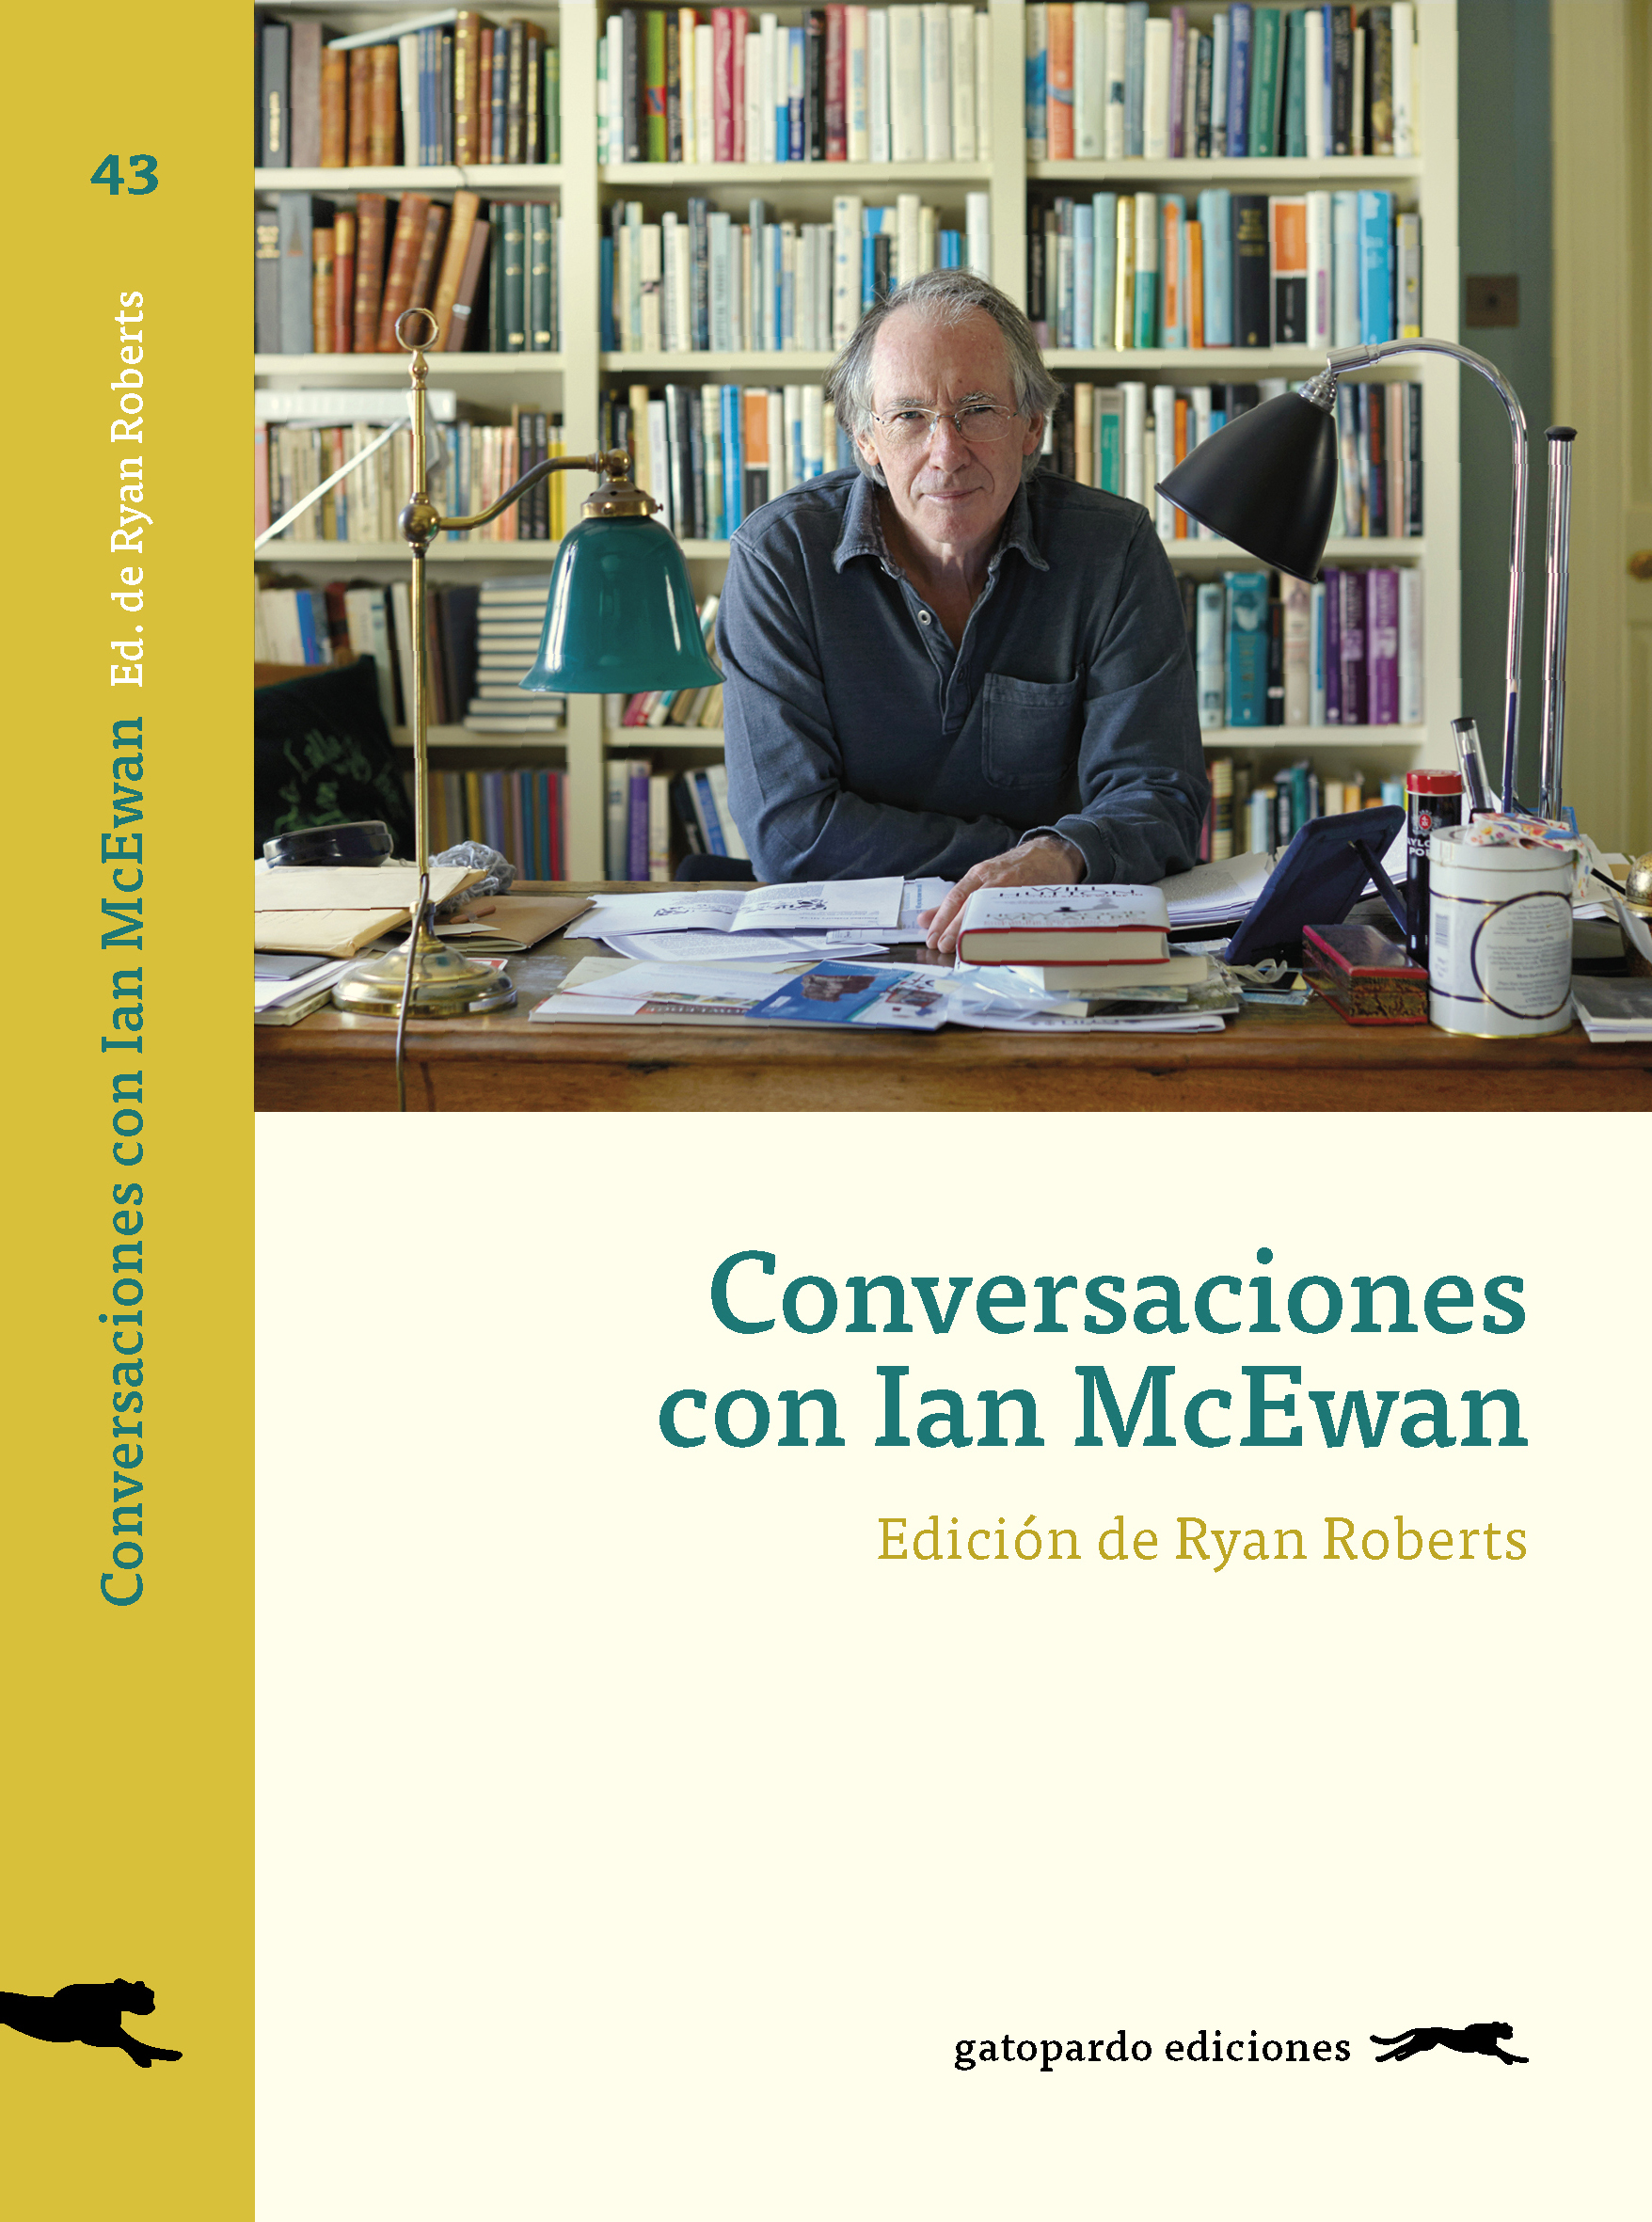 Conversaciones con Ian McEwan, edited by Ryan Roberts